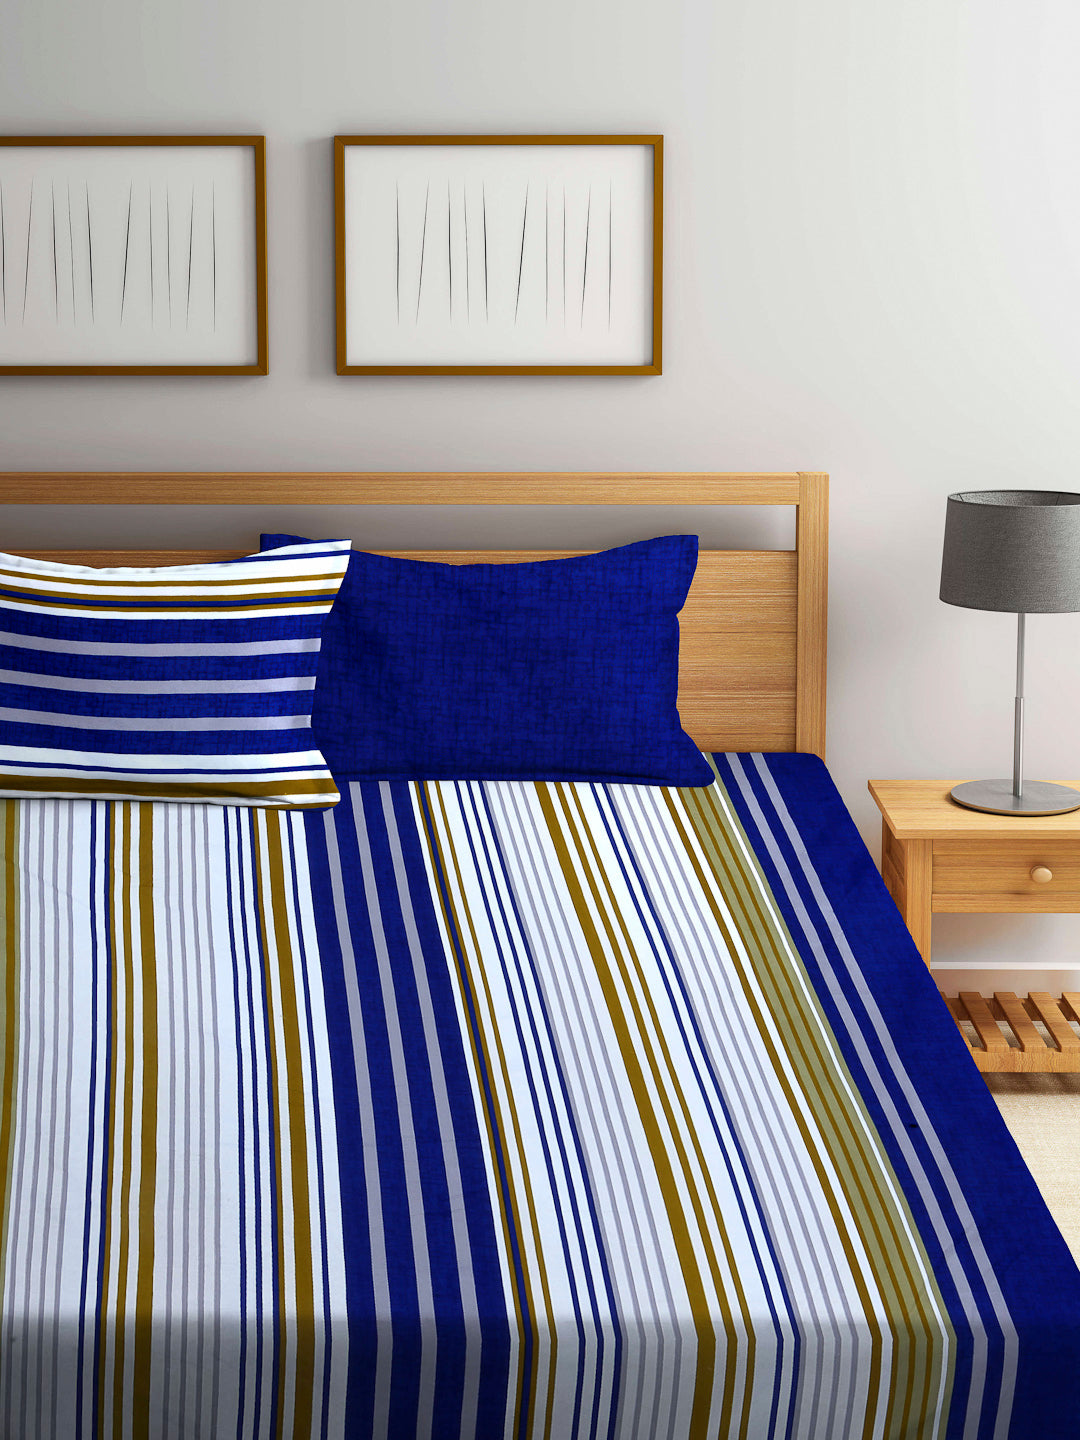 Arrabi Blue Stripes TC Cotton Blend Super King Size Bedsheet with 2 Pillow Covers (270 x 260 cm)